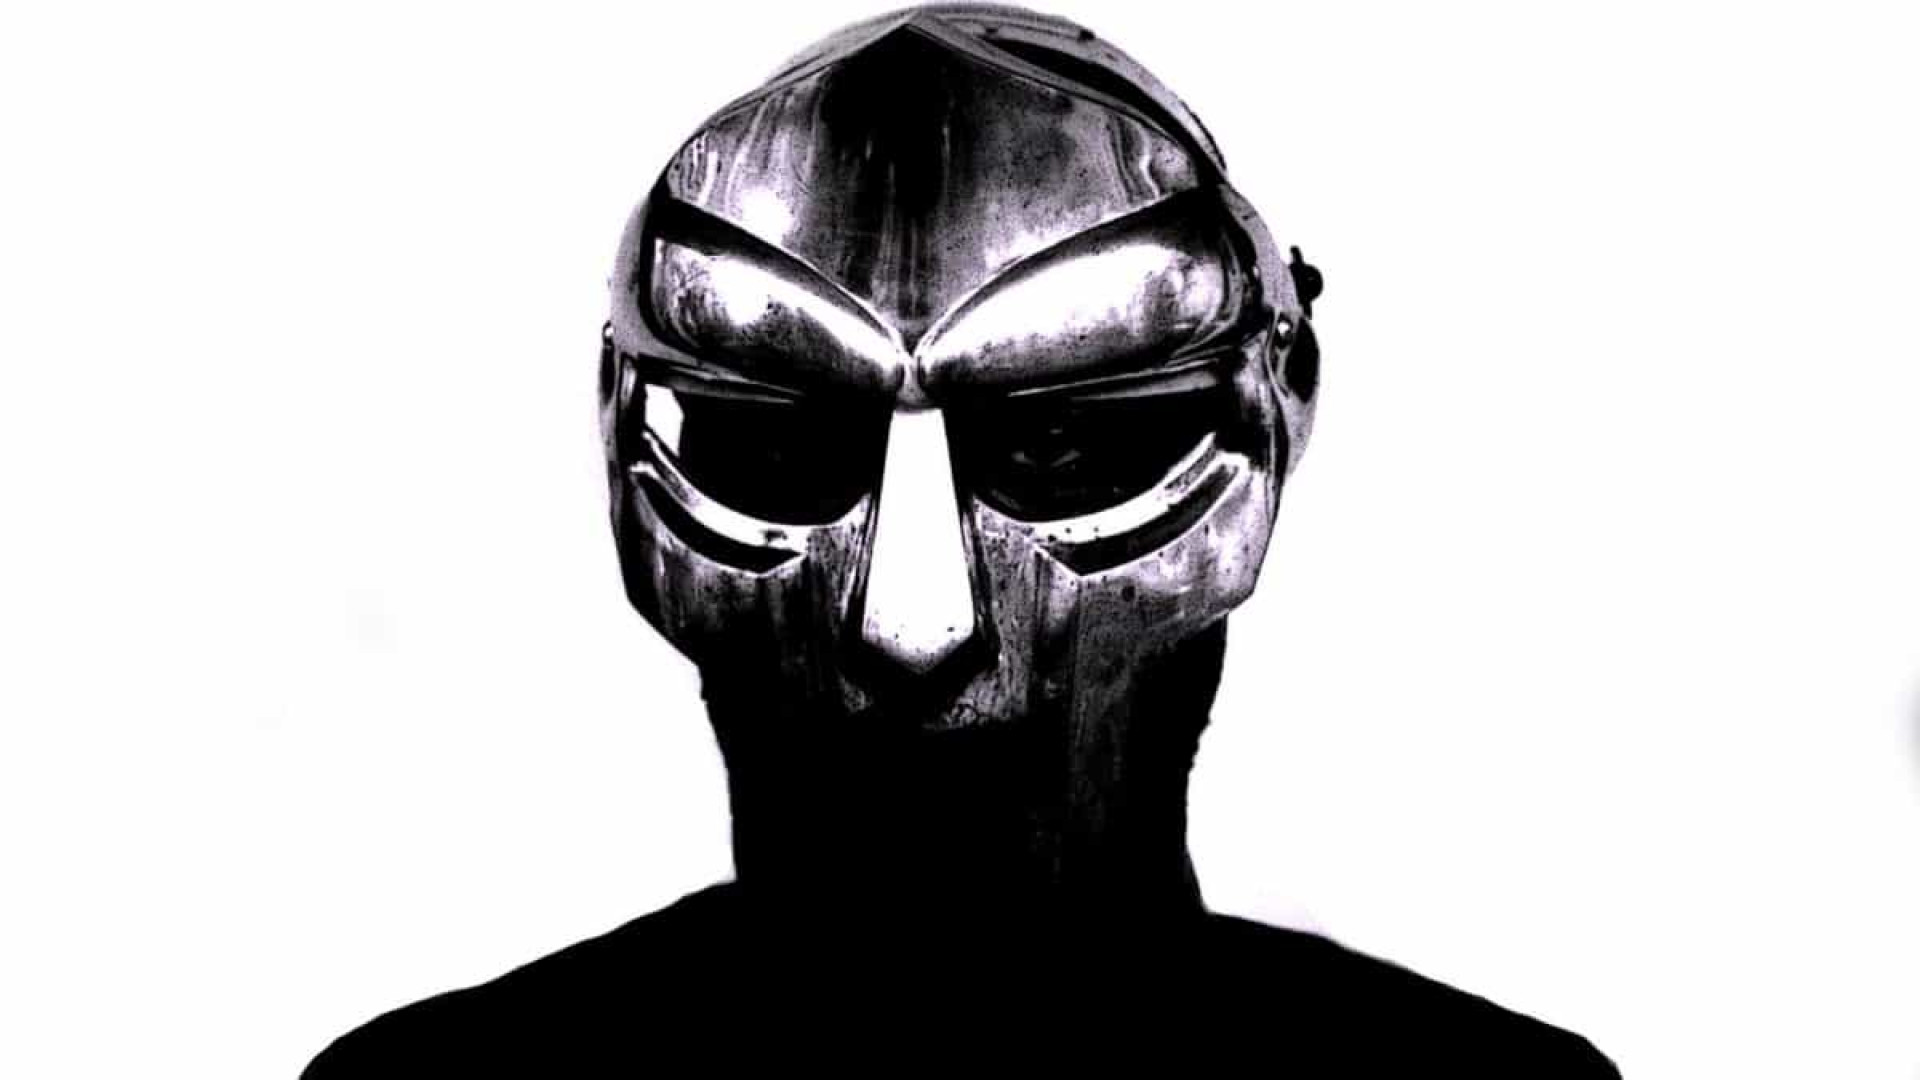 Morre o rapper MF Doom, ícone do hip hop underground, tão genial